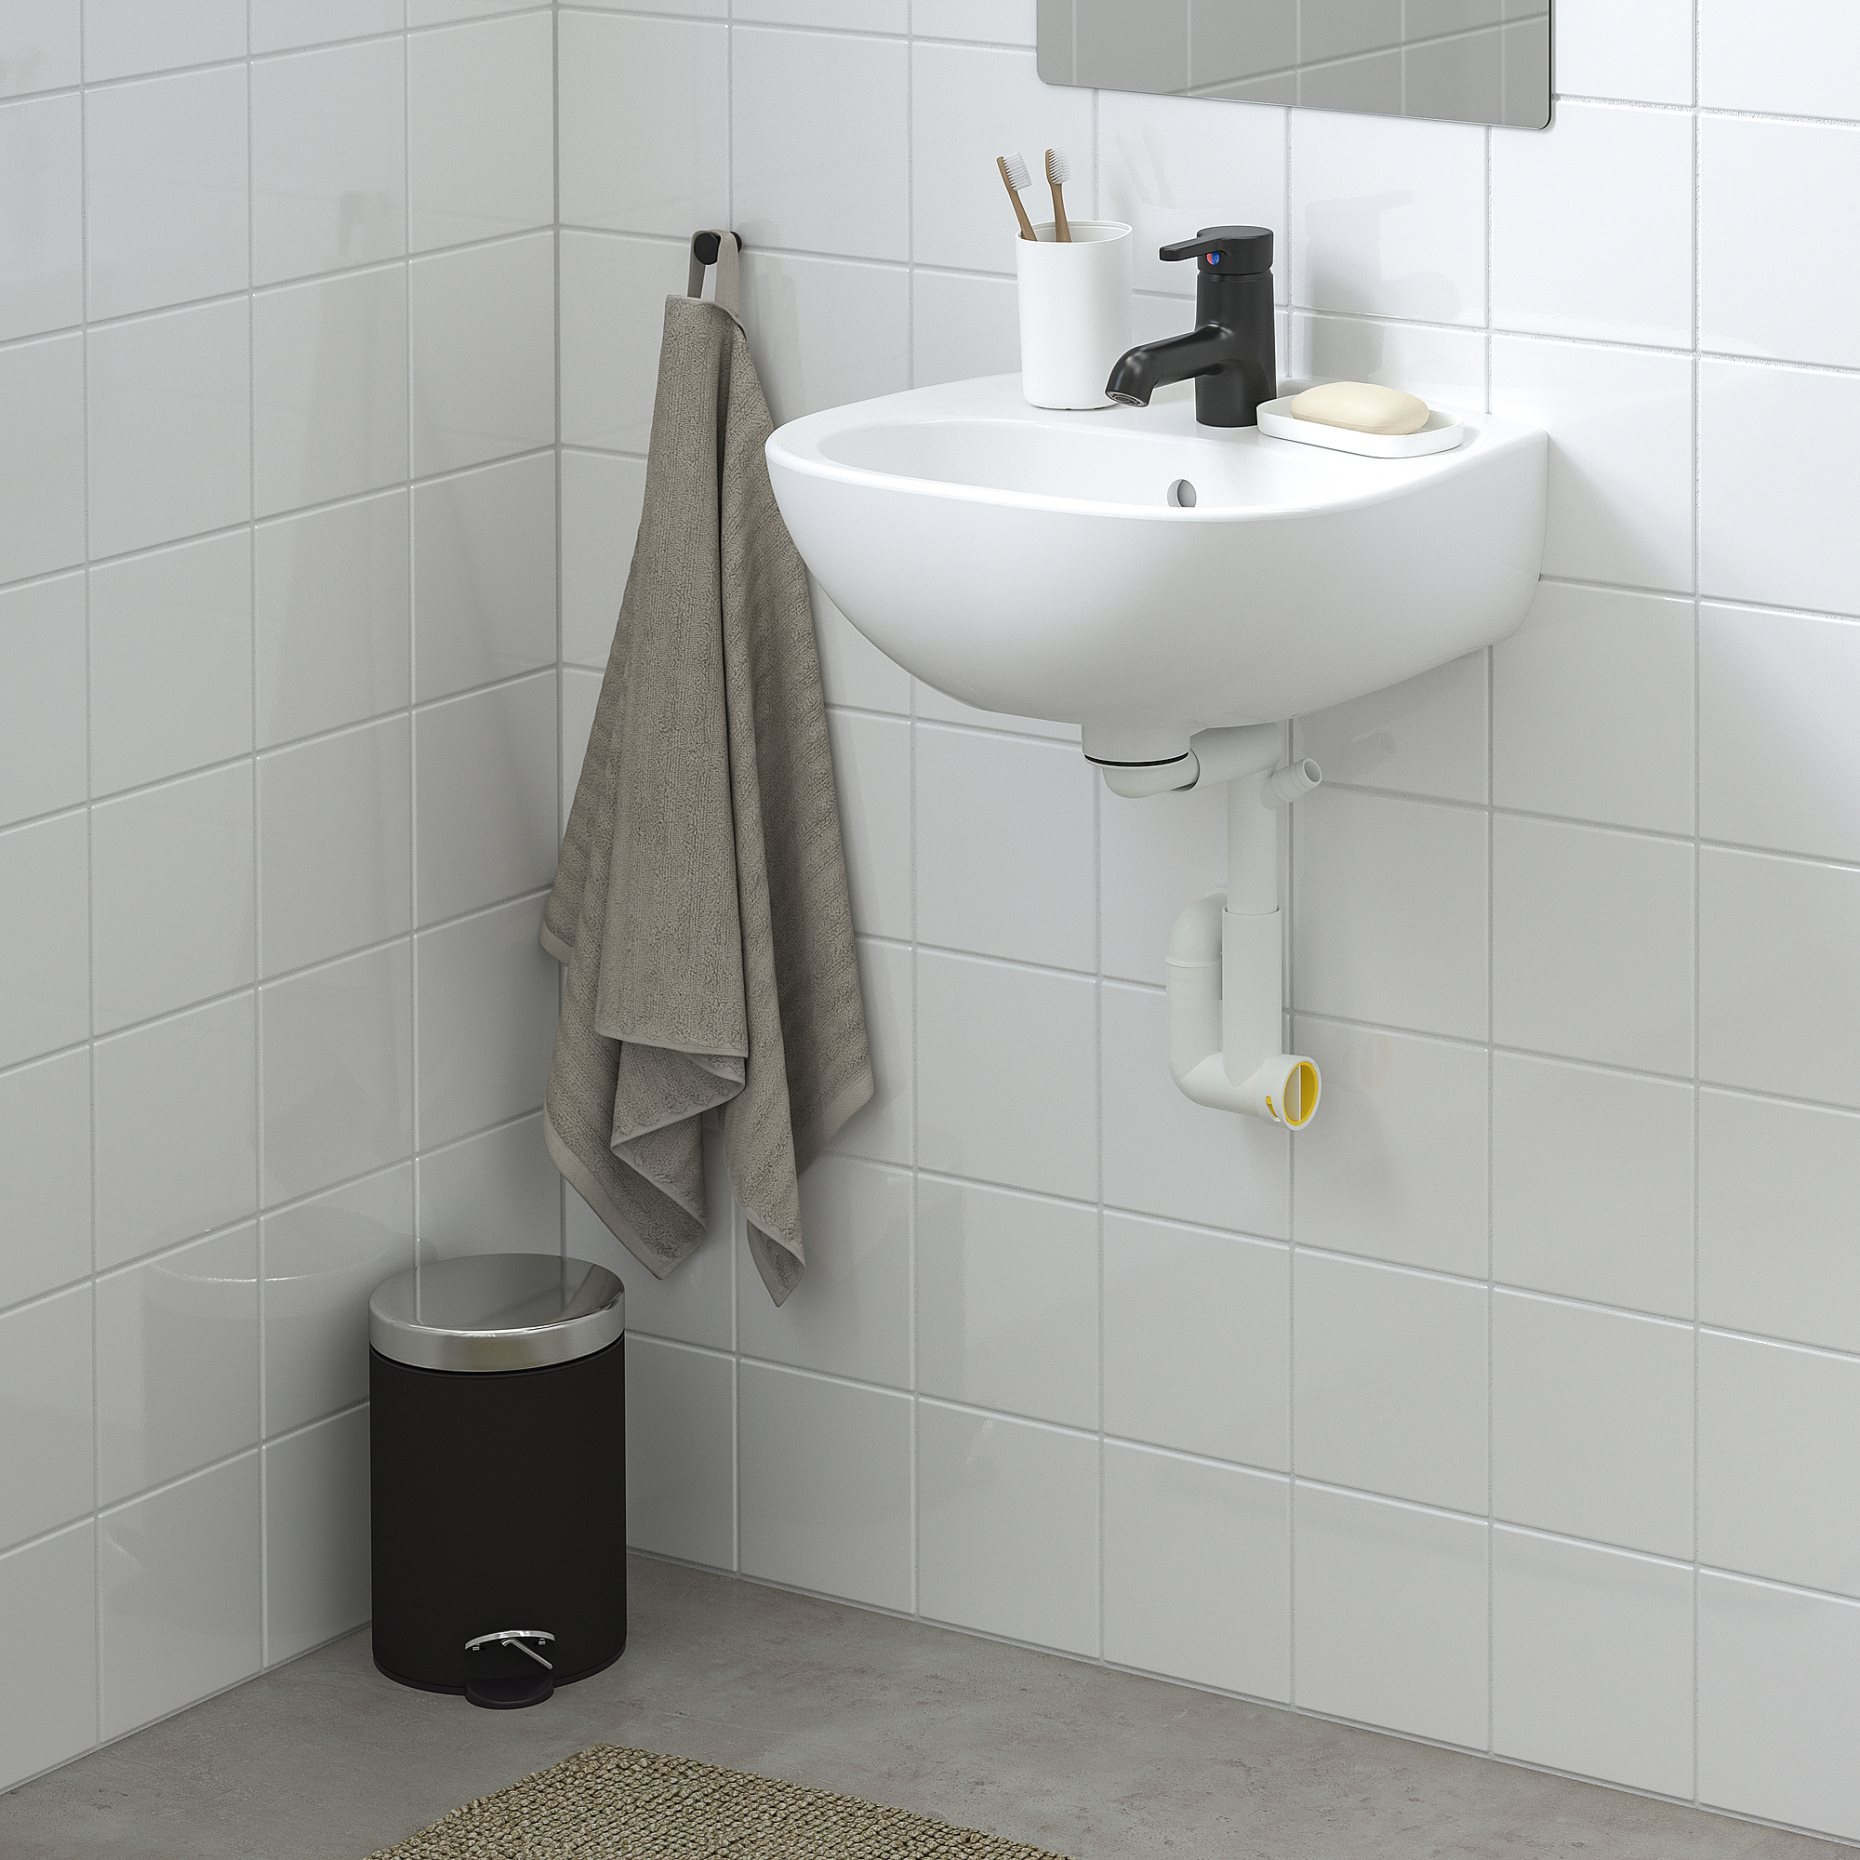 SKATSJÖN, single wash-basin, 45x35 cm, 705.042.57